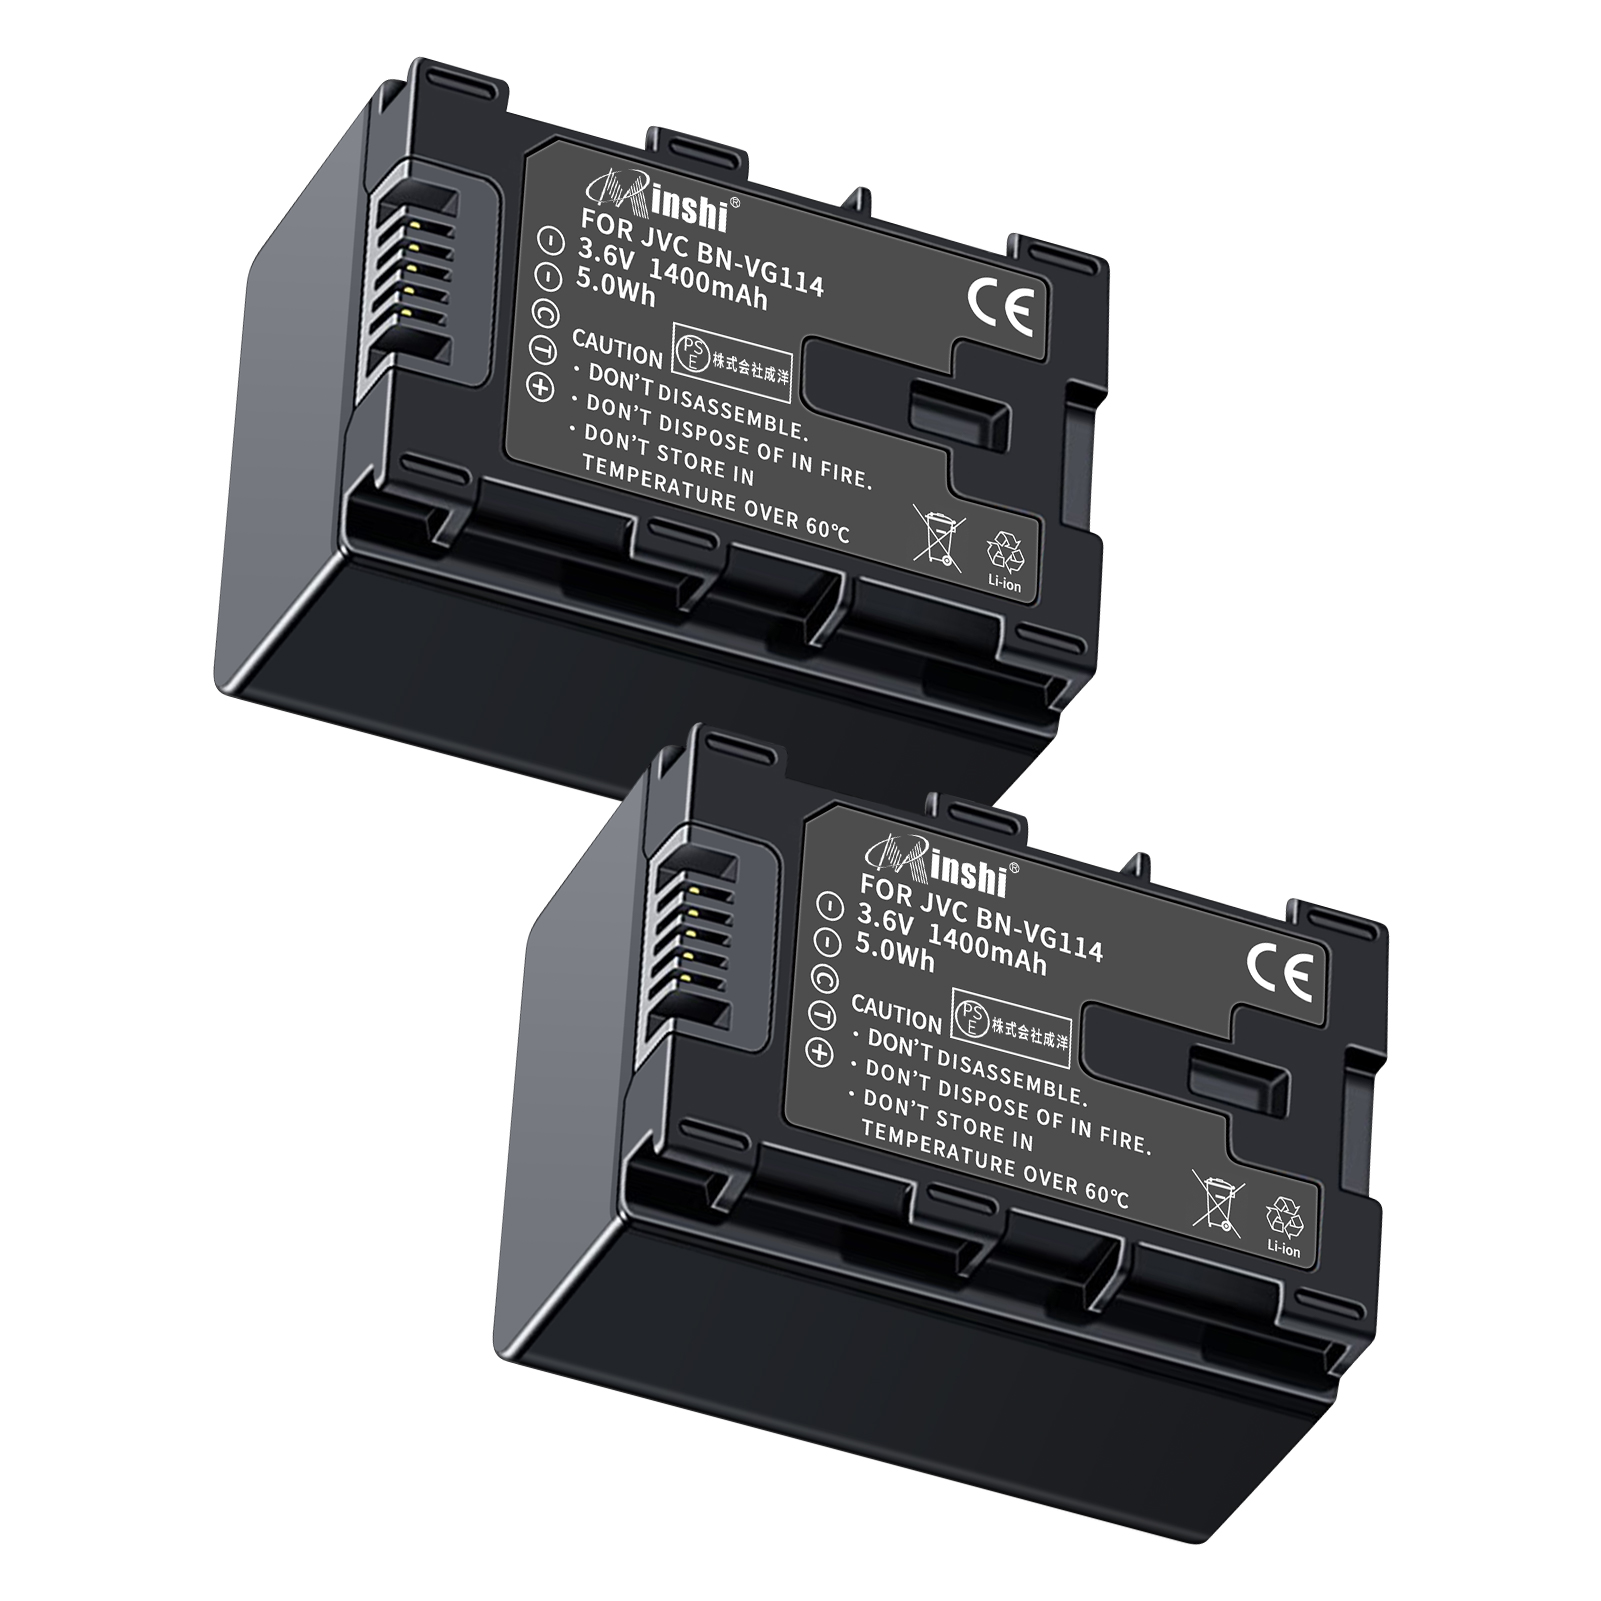 【２個セット】 minshi VICTOR GZ-E320 BN-VG121 対応 互換バッテリー 1400mAh 高品質交換用バッテリー